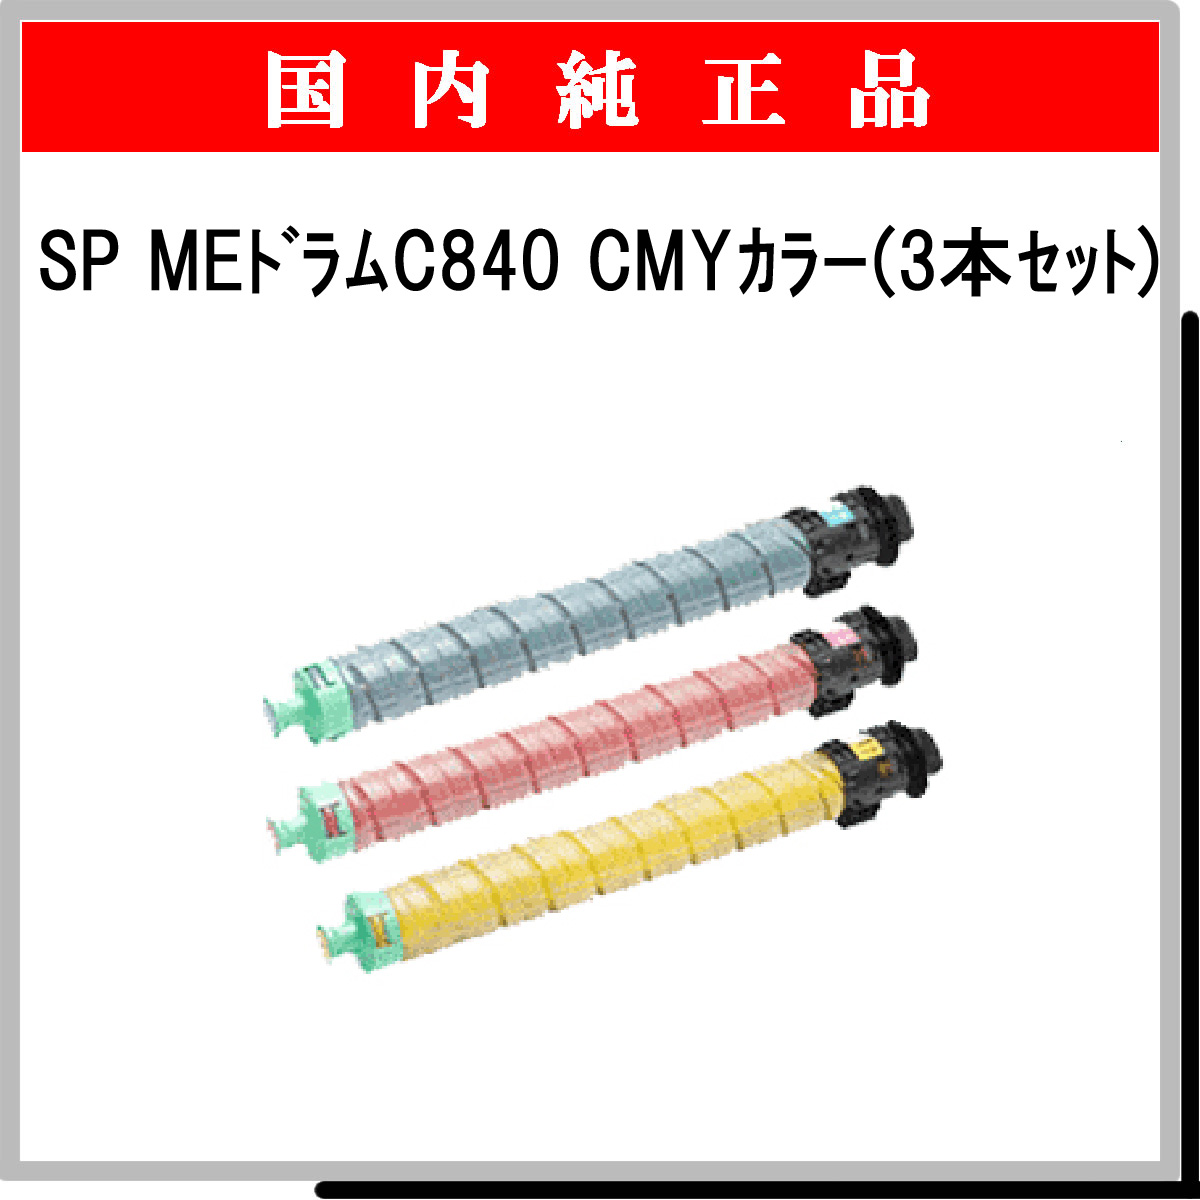 SP ME ﾄﾞﾗﾑﾕﾆｯﾄ C840 ｶﾗ-3色ﾊﾟｯｸ 純正